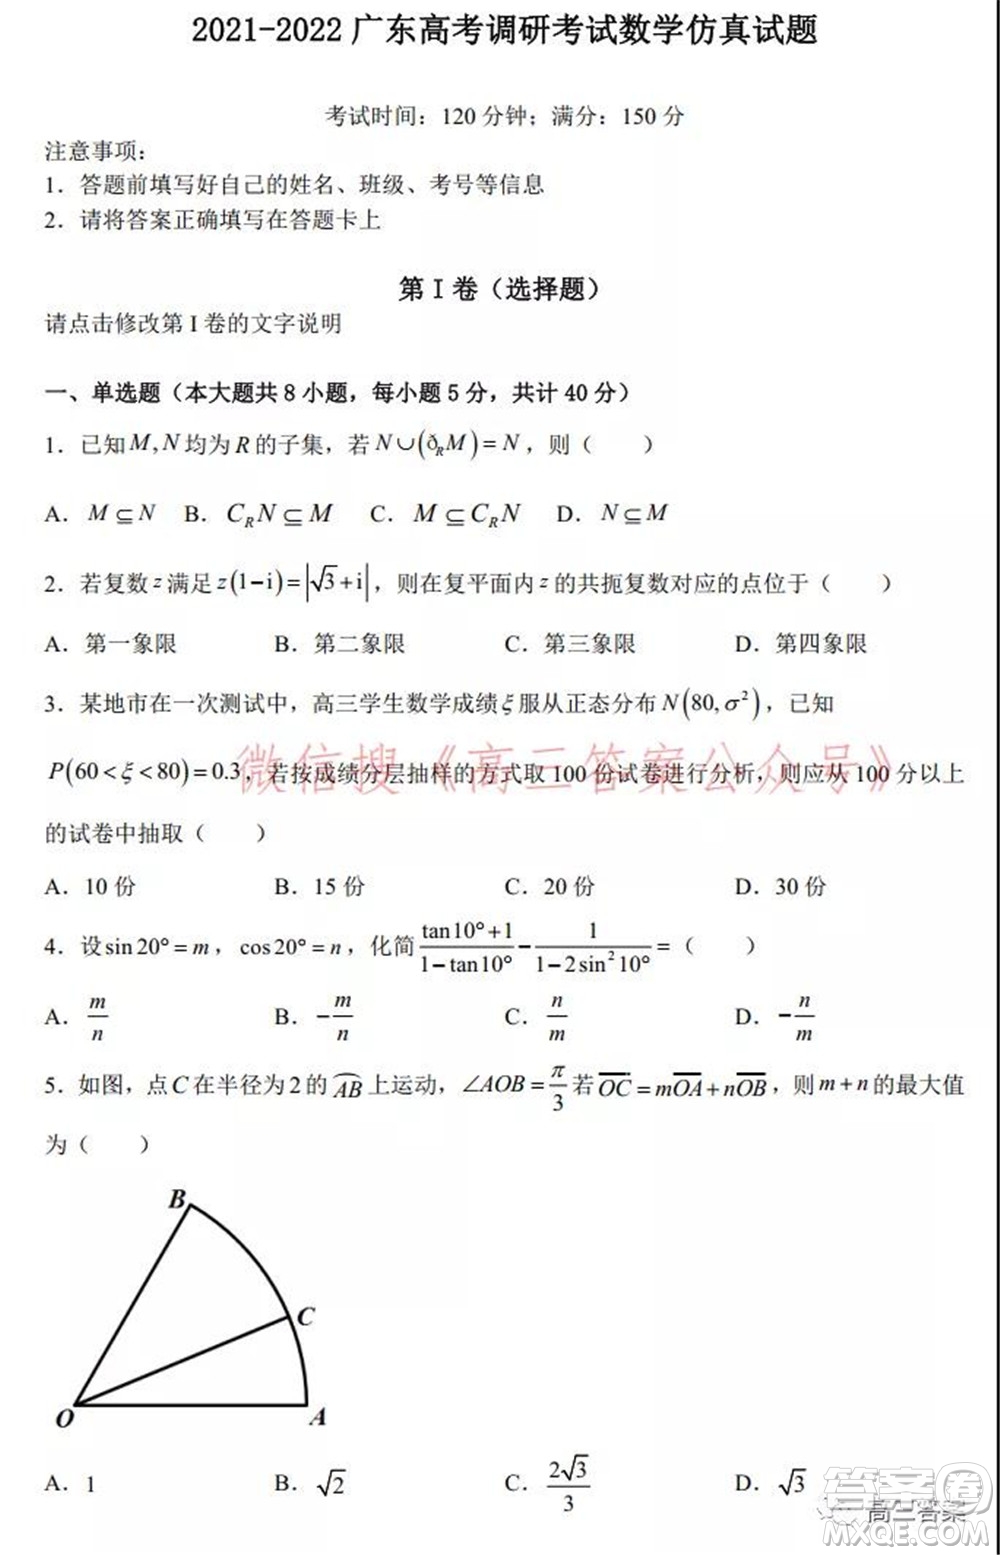 2021-2022广东高考调研考试仿真试题数学试题及答案